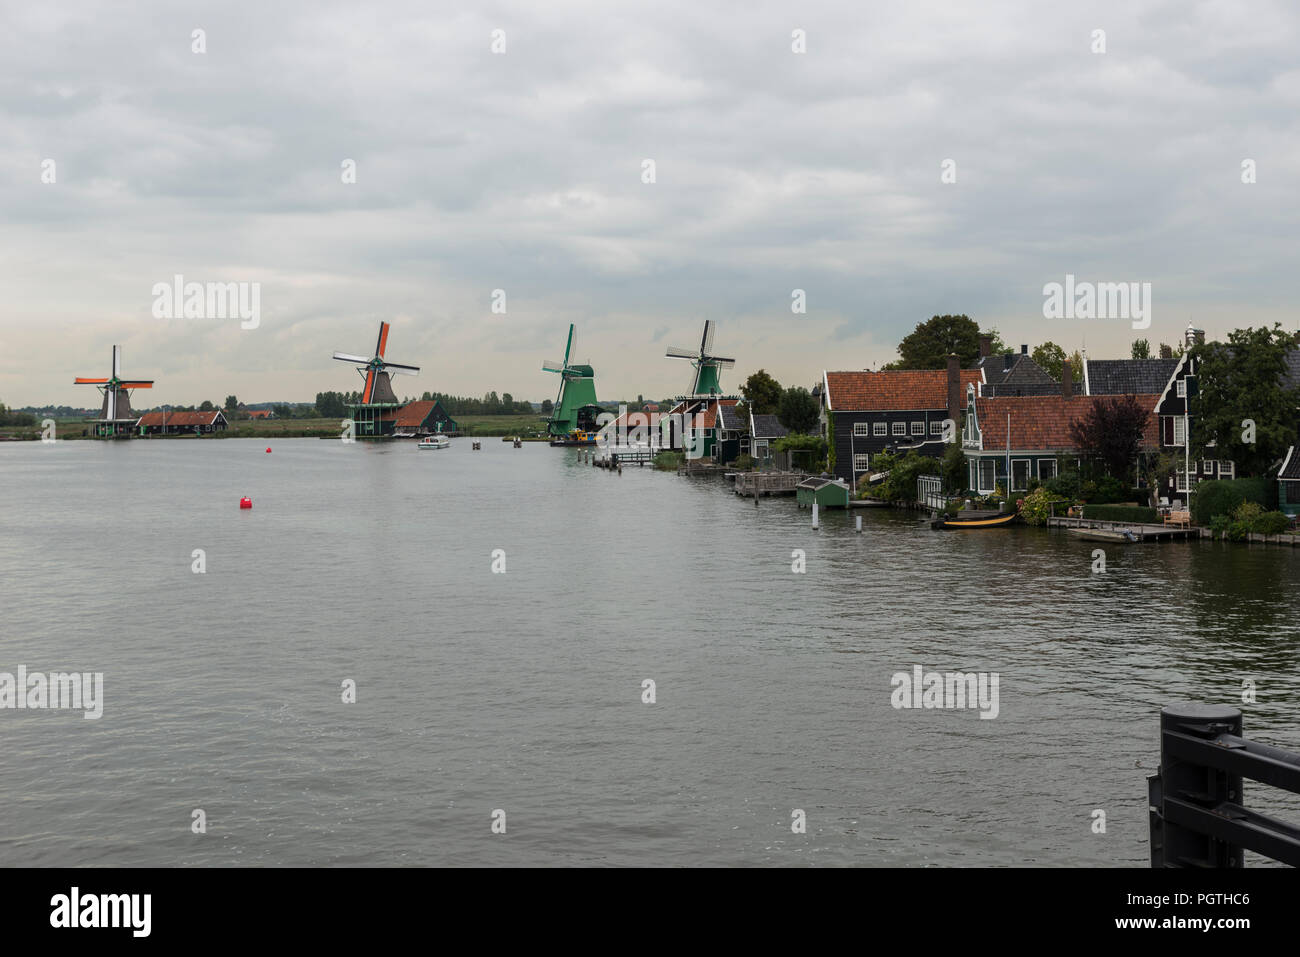 Autentica Zaandam mulini sul canale di acqua nel villaggio di Zaanstad. Zaanse Schans mulini a vento e famosi canali olandesi, l'Europa. Foto Stock